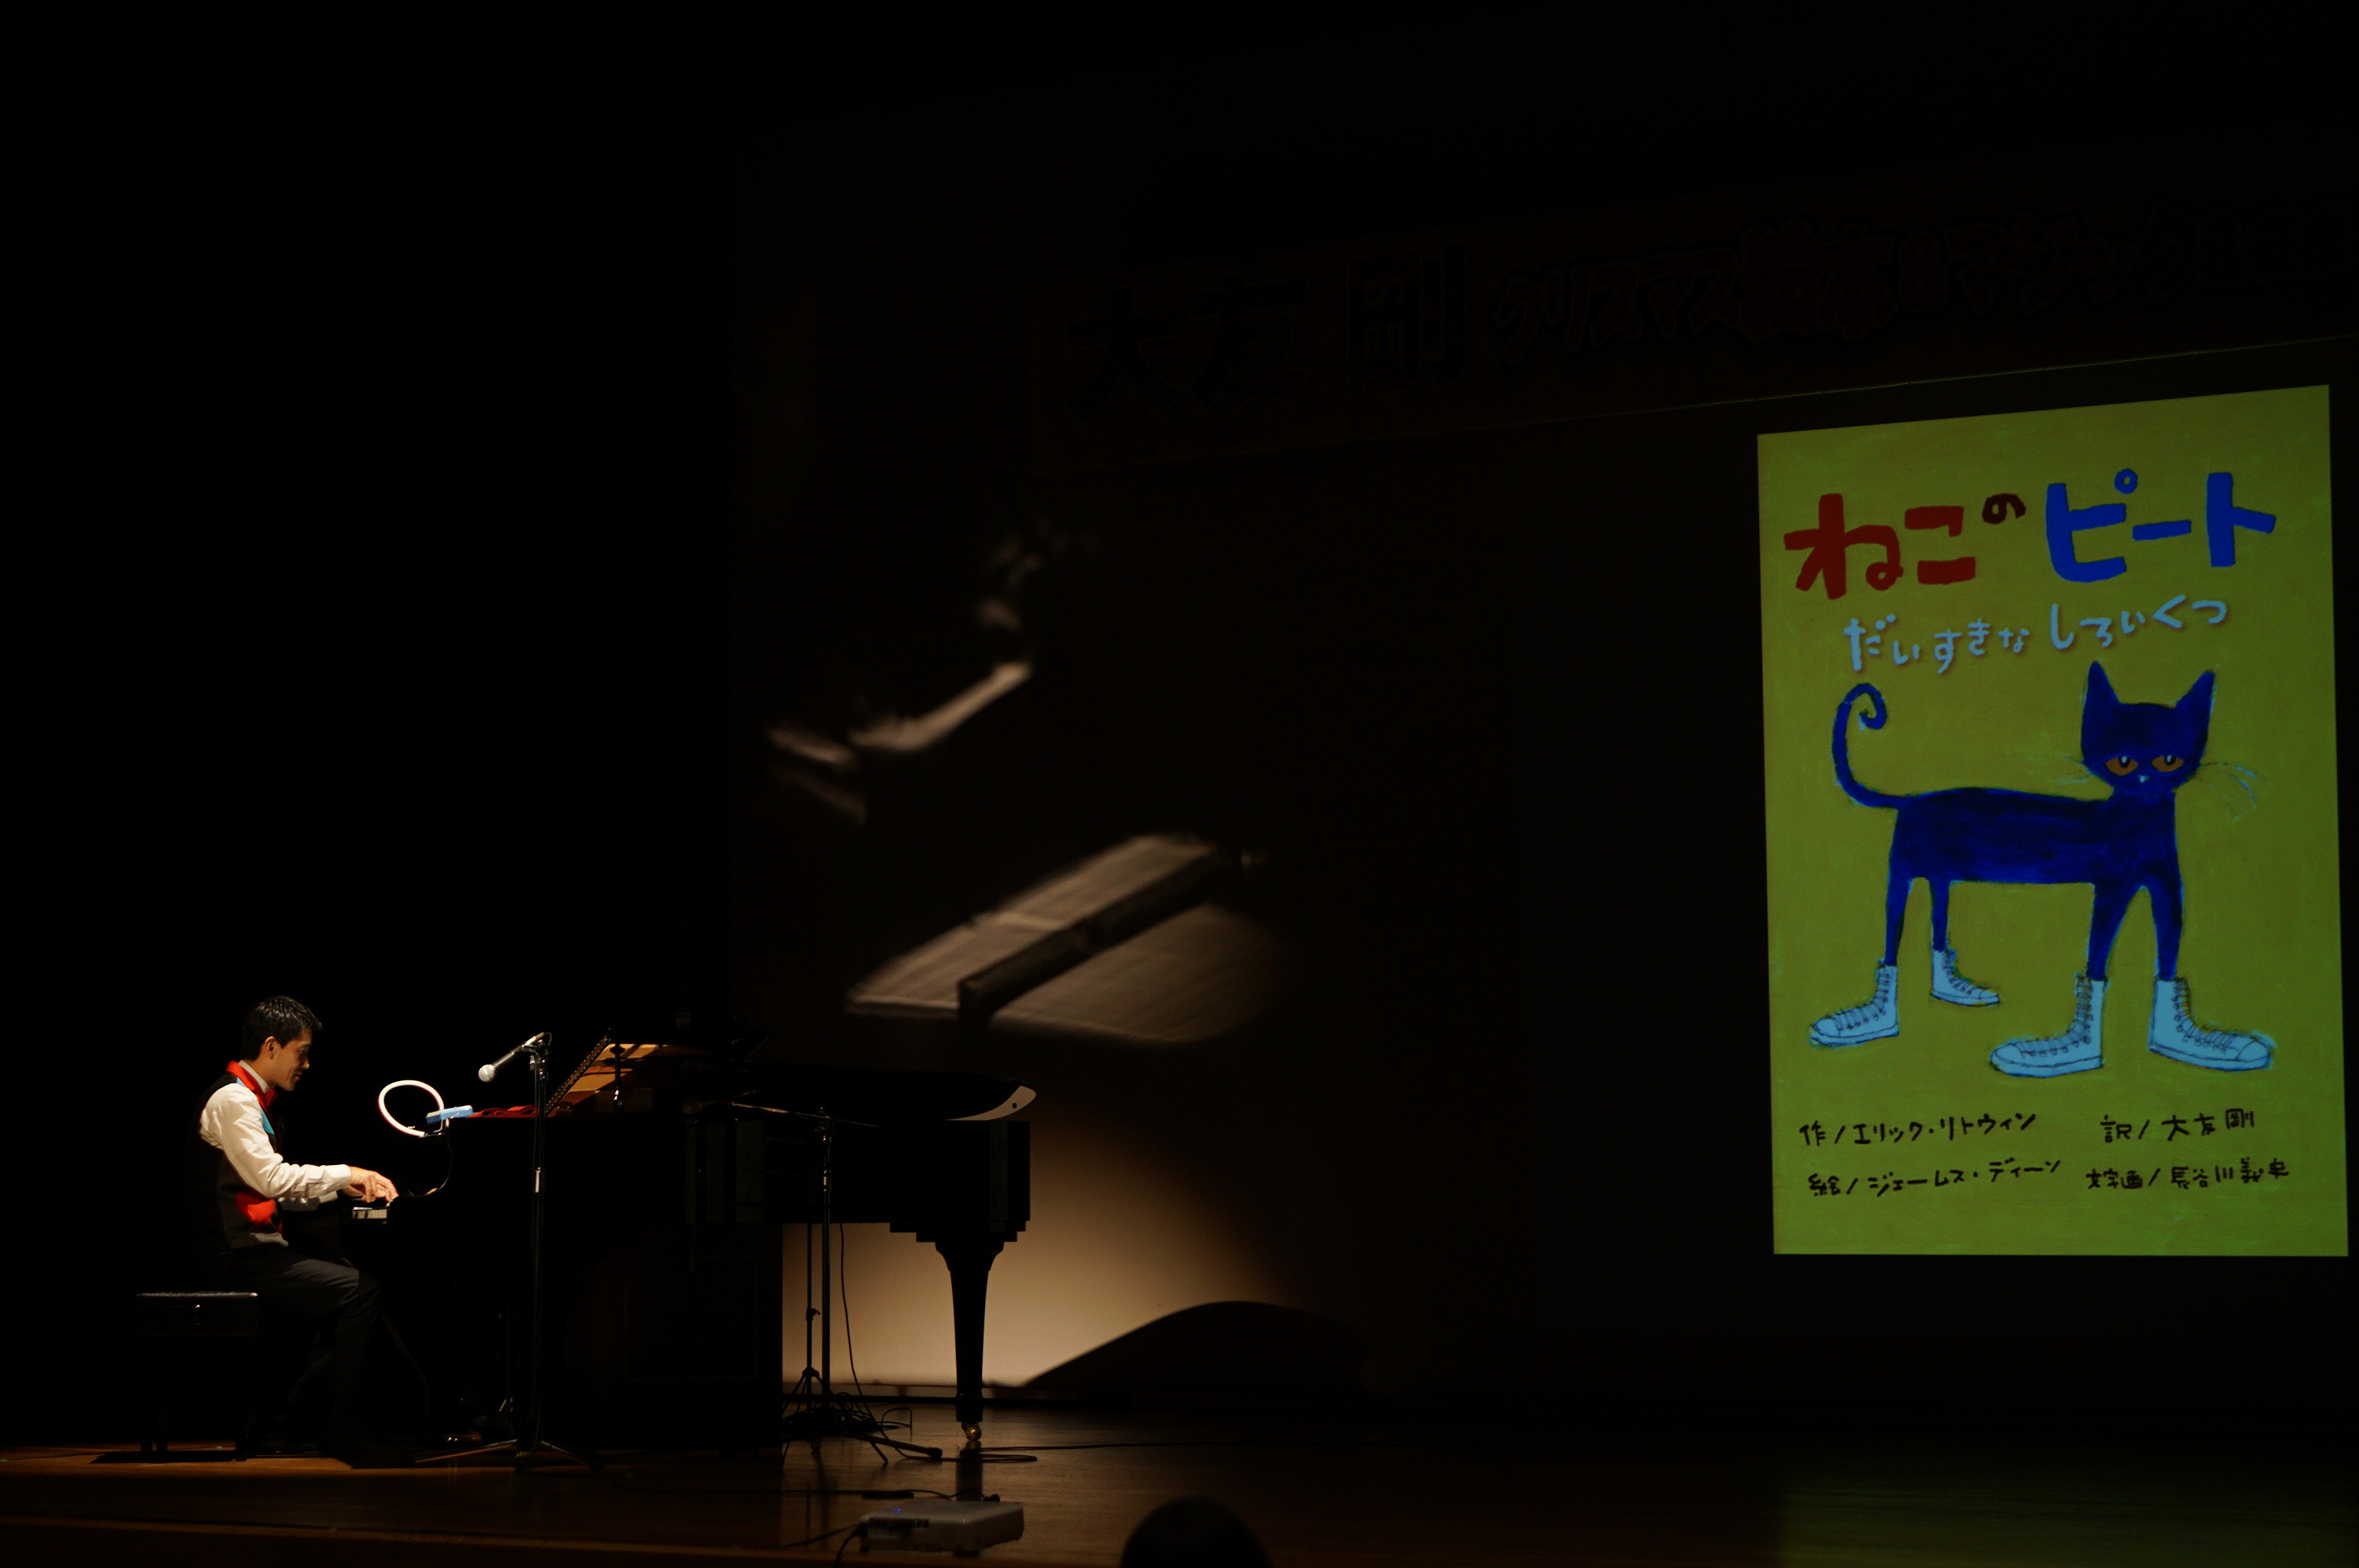 スクリーンに映された絵本「猫のピート」の表紙の画像の前でピアノを弾く大友さんの写真